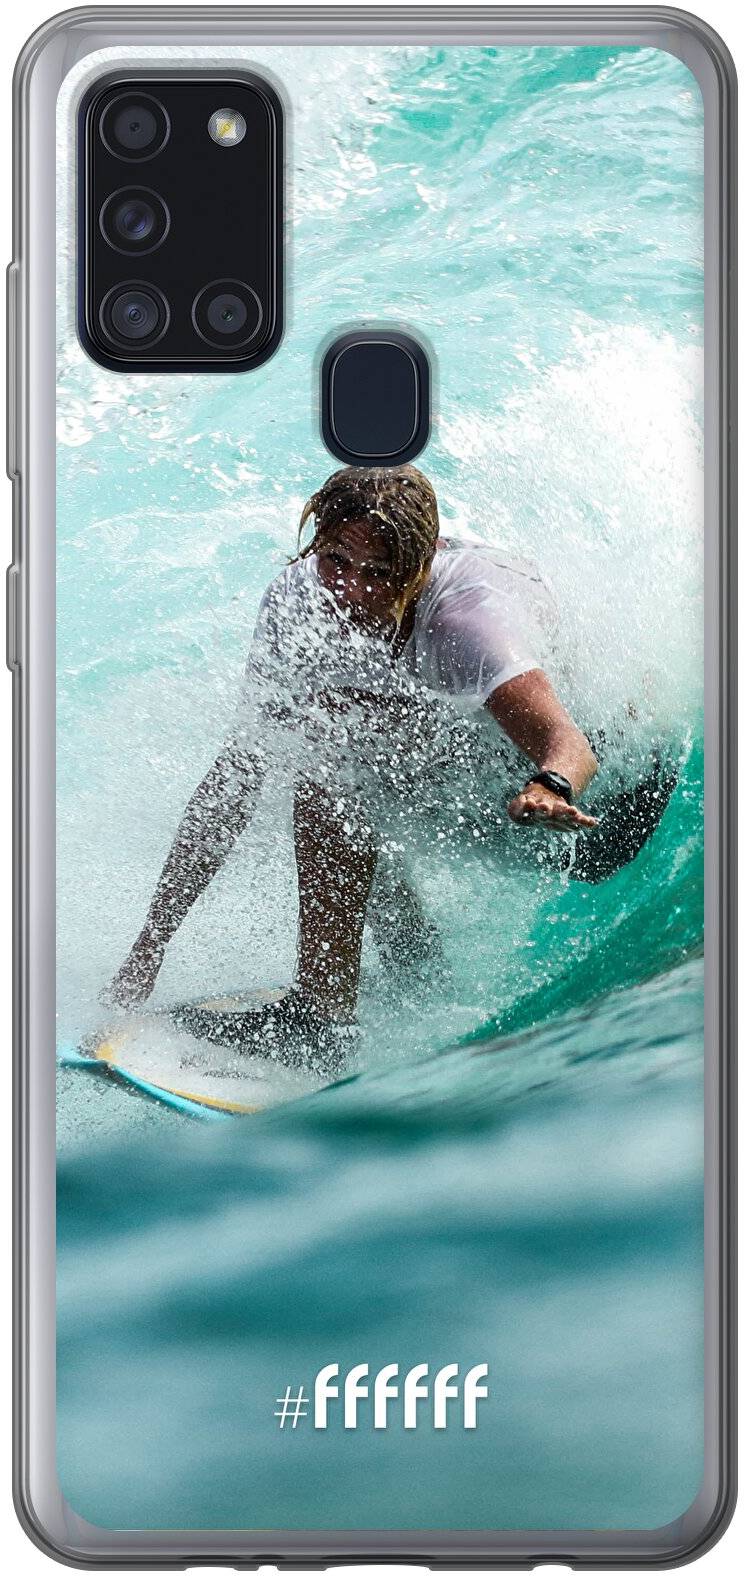 Boy Surfing Galaxy A21s